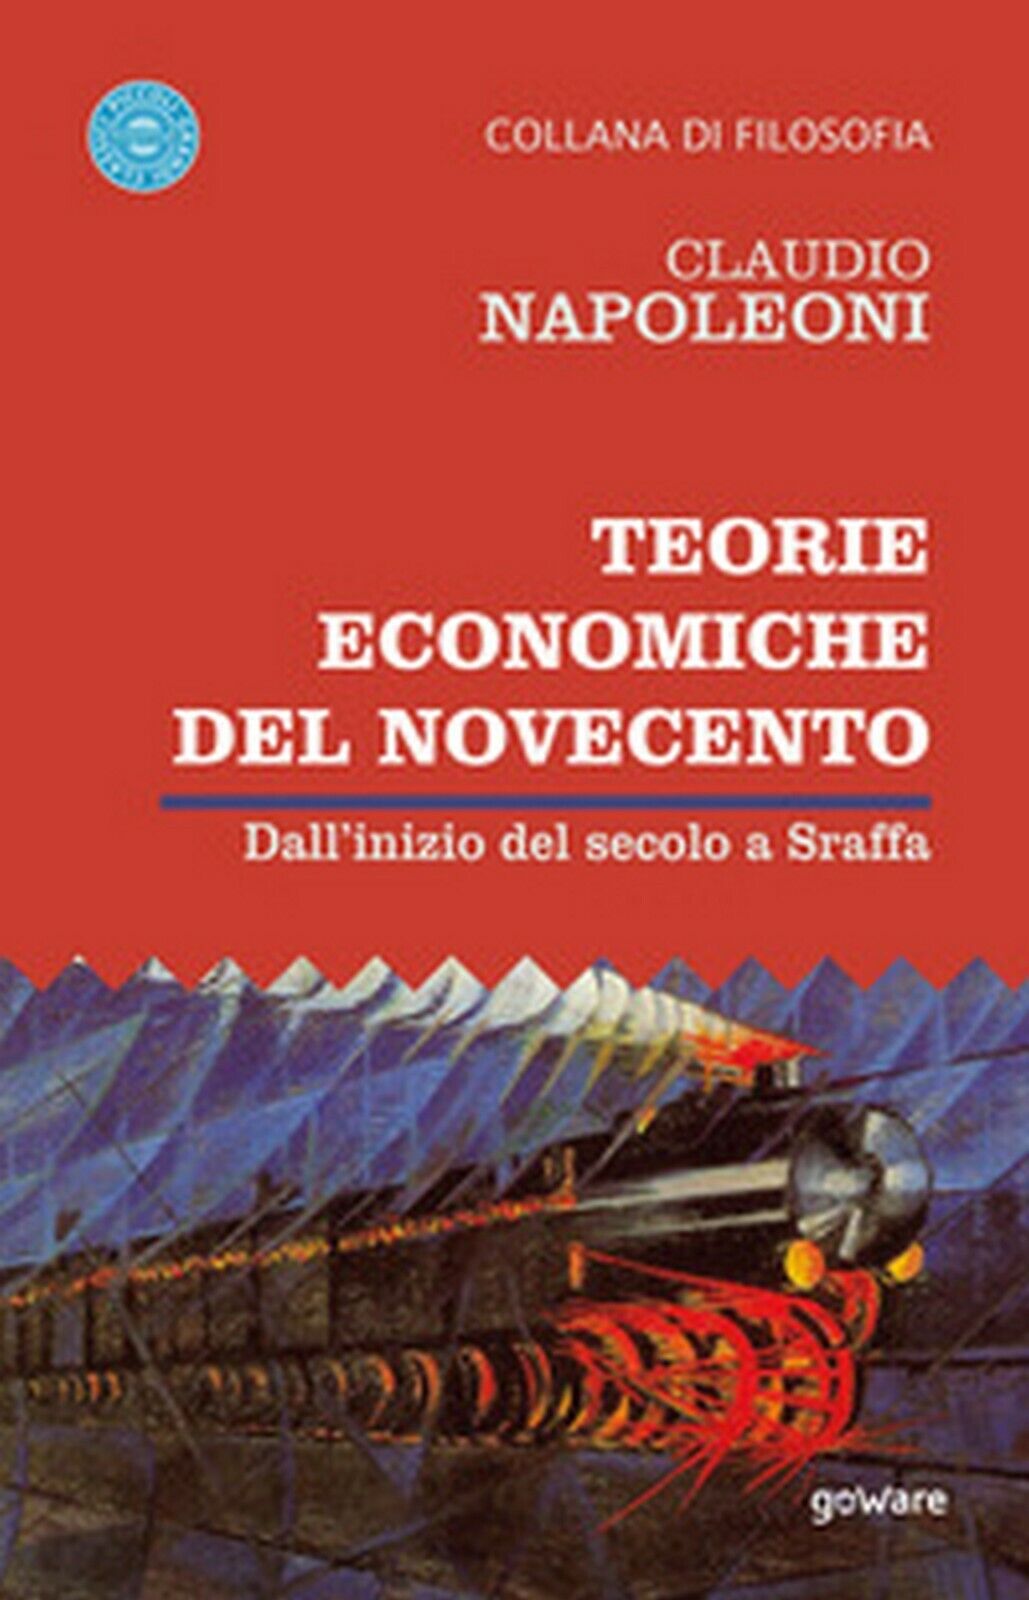 Teorie economiche del Novecento. DalL'inizio del secolo a Sraffa (C. Napoleoni)